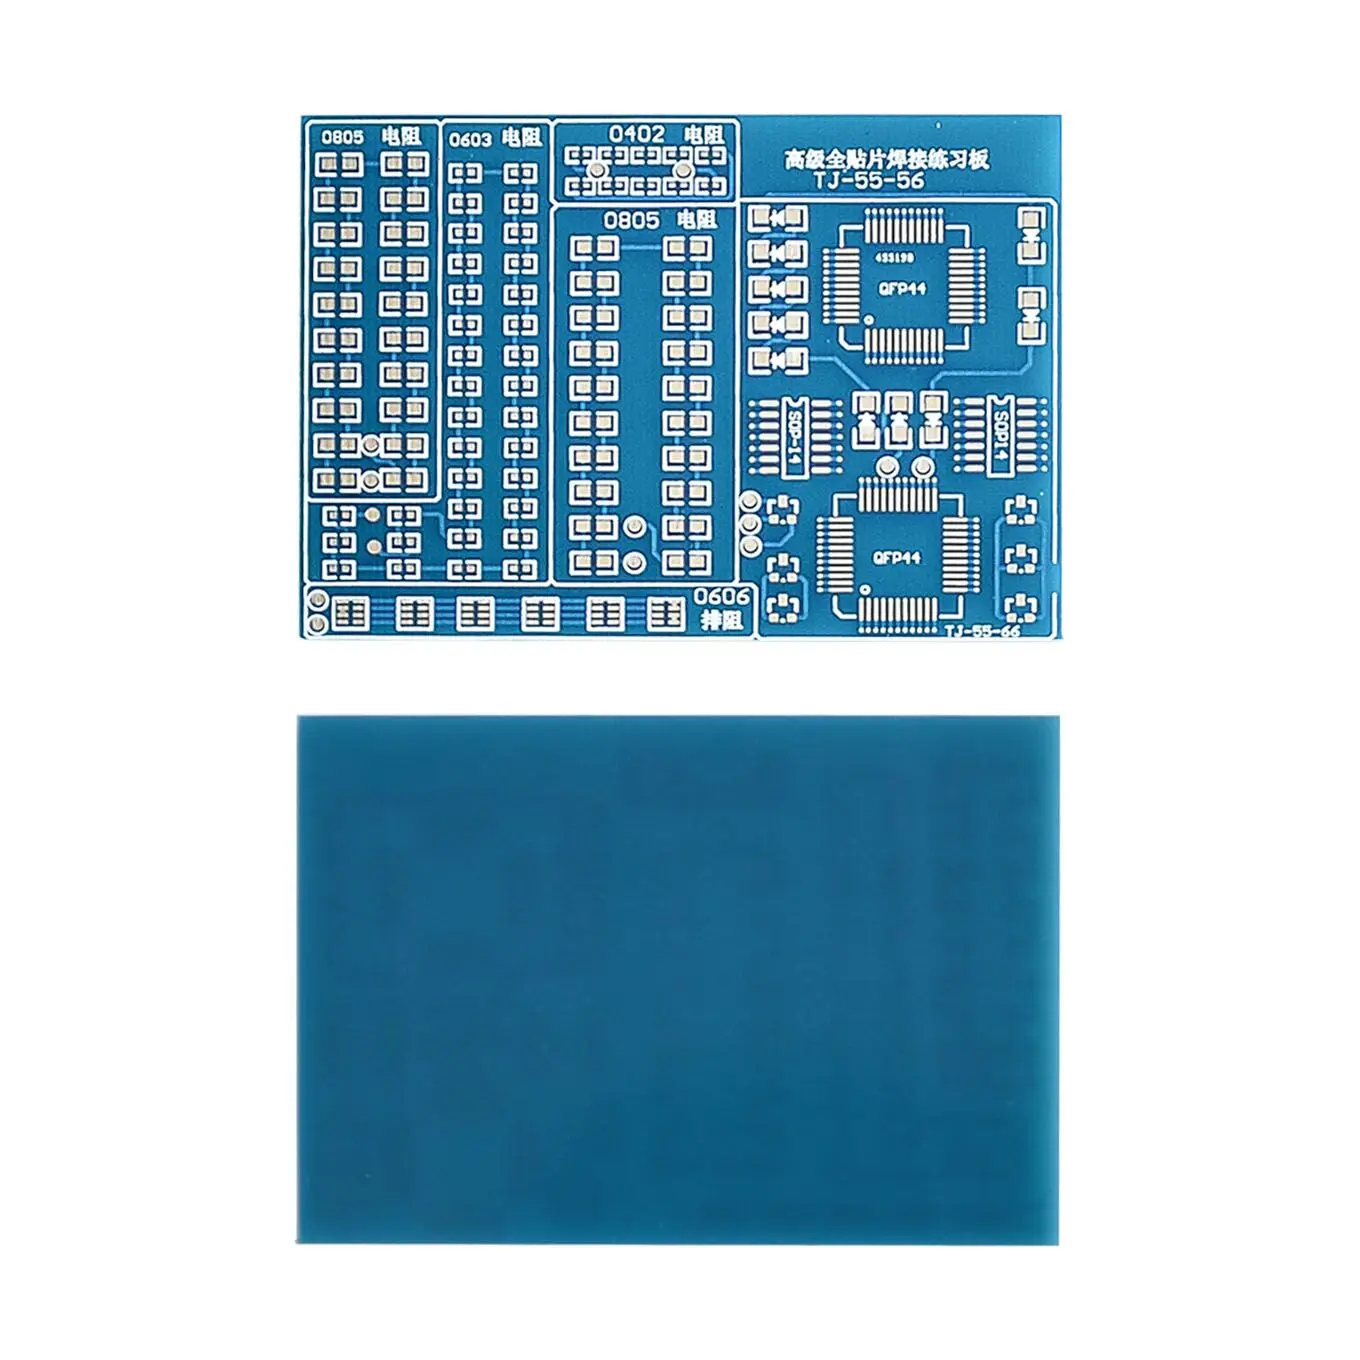 1 Комплект SMT SMD компонент сварки практика доска пайки DIY Kit реситор диод транзистор по начать обучение электронный